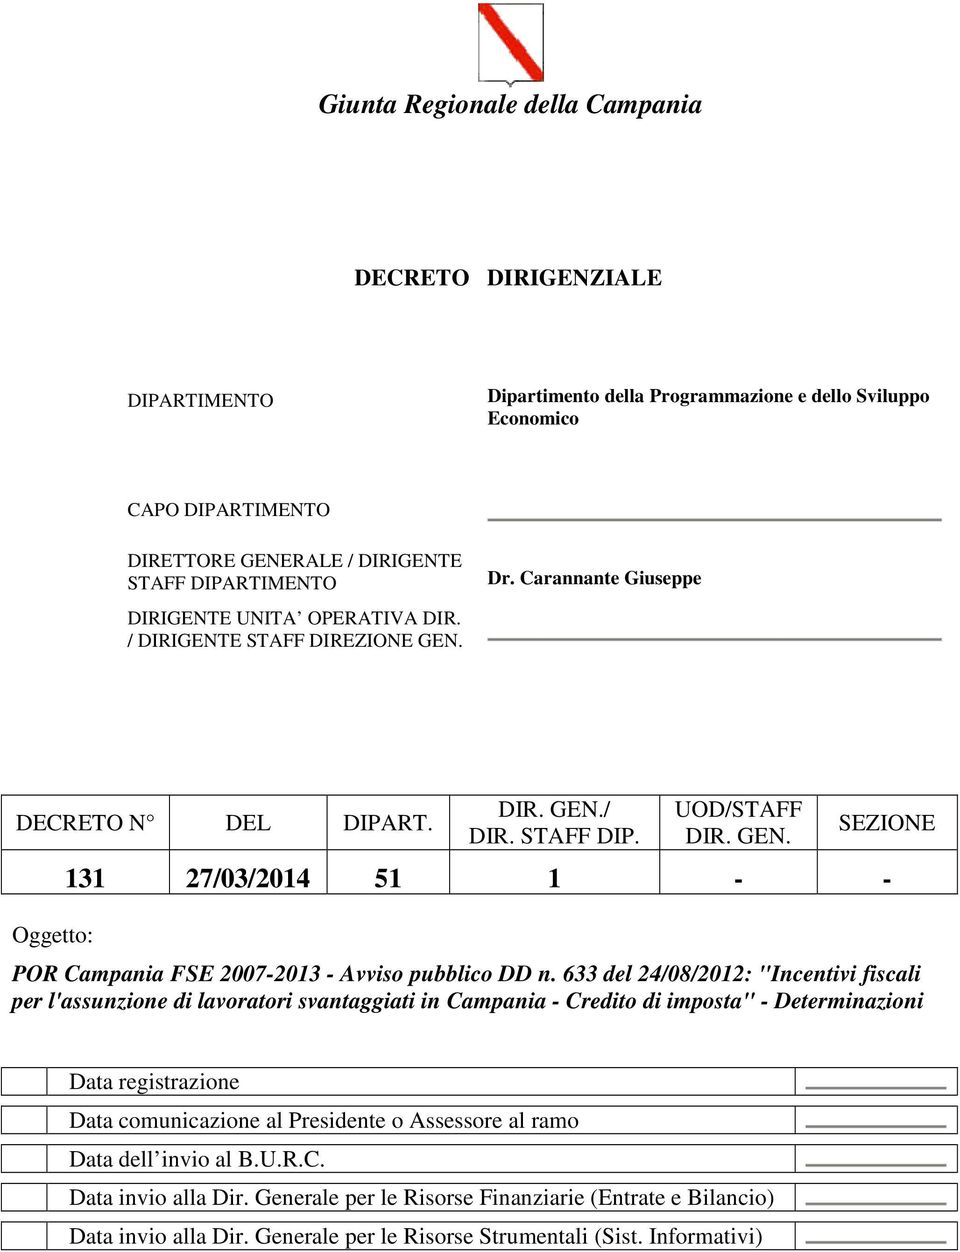 633 del 24/08/2012: "Incentivi fiscali per l'assunzione di lavoratori svantaggiati in Campania - Credito di imposta" - Determinazioni Data registrazione Data comunicazione al Presidente o Assessore